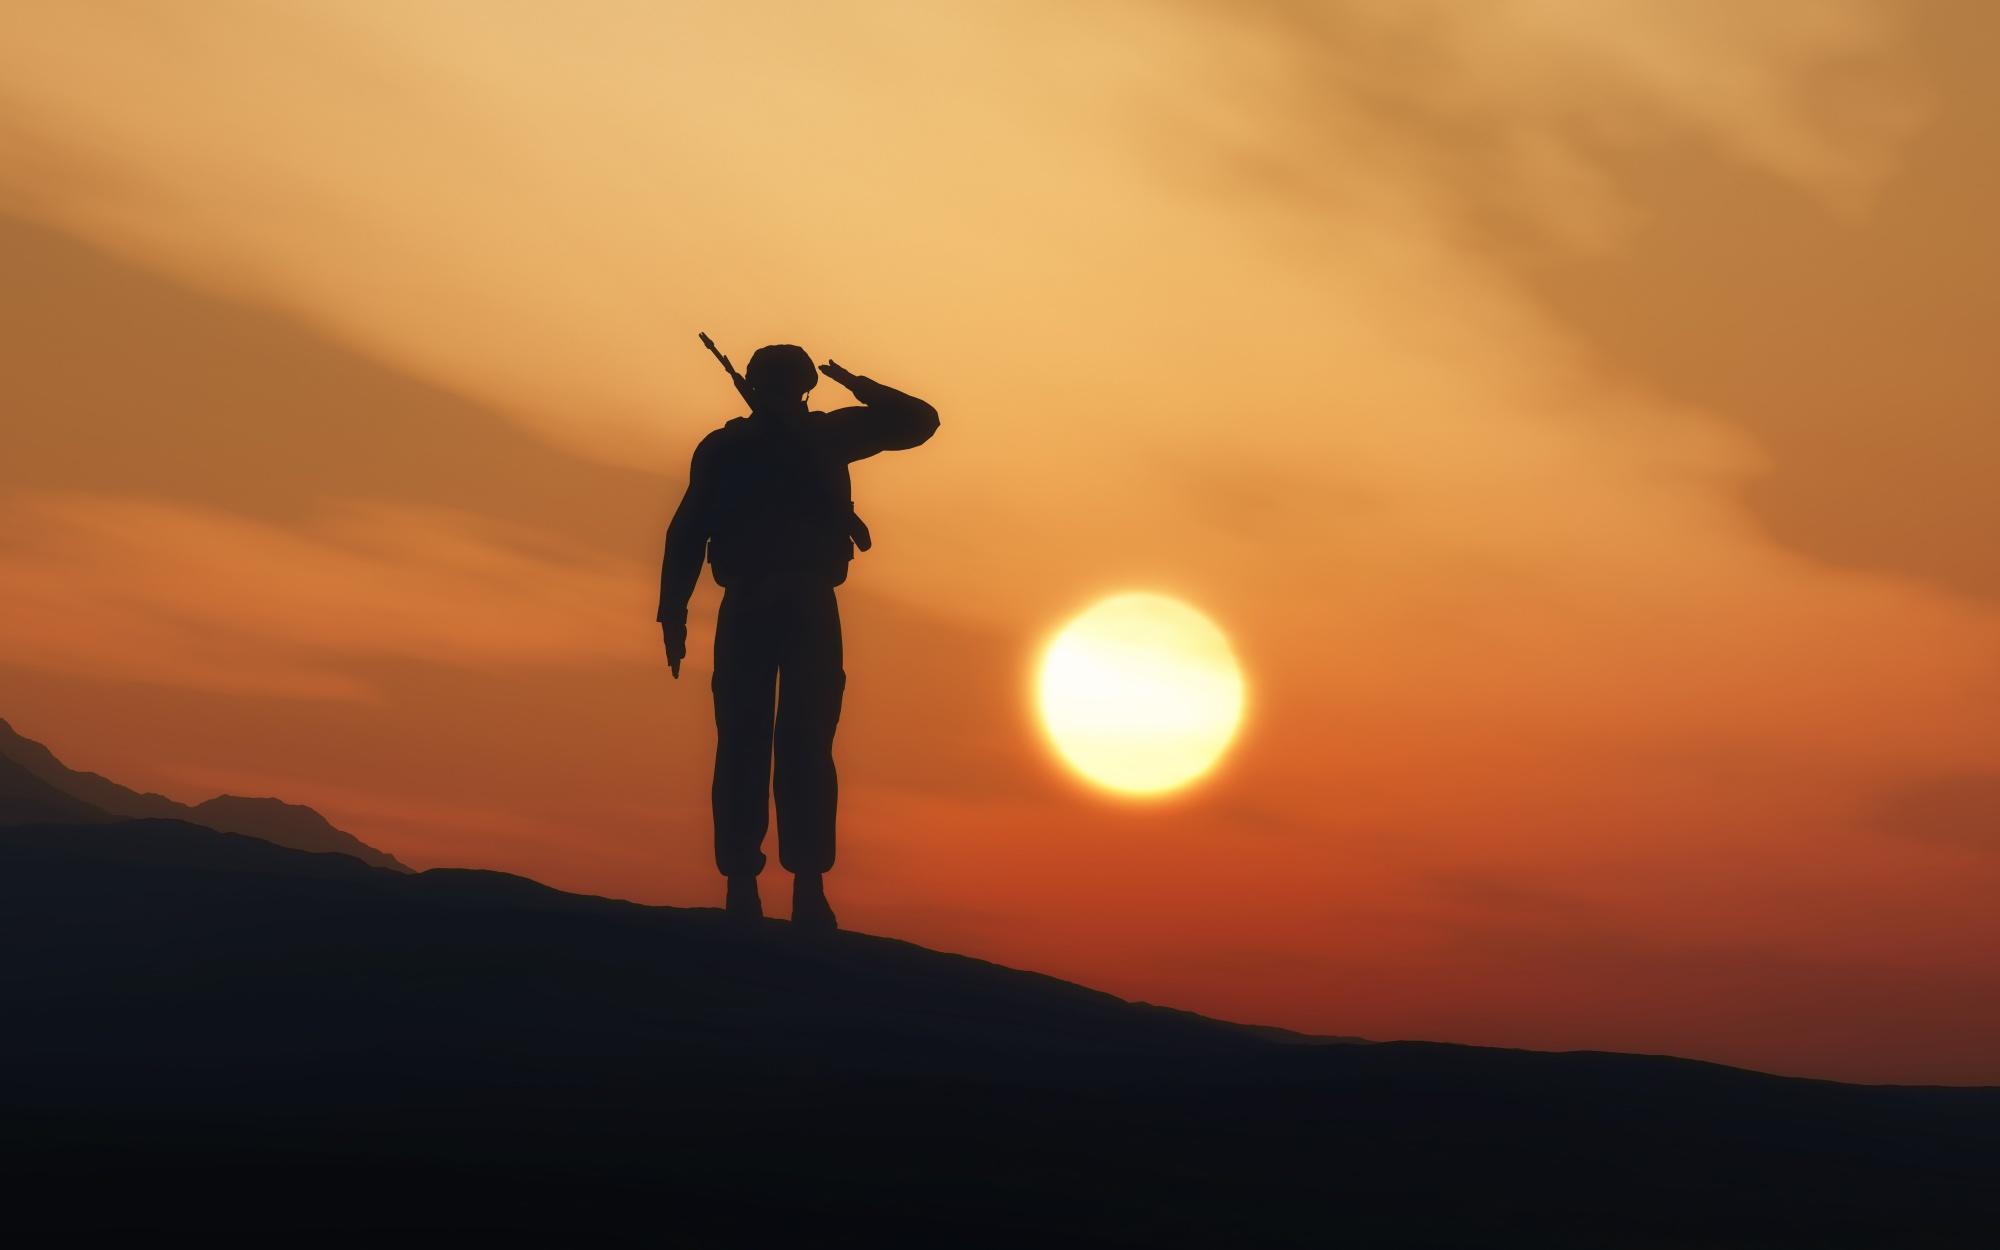 Soldado defendiendo a Occidente del sol que sale desde oriente